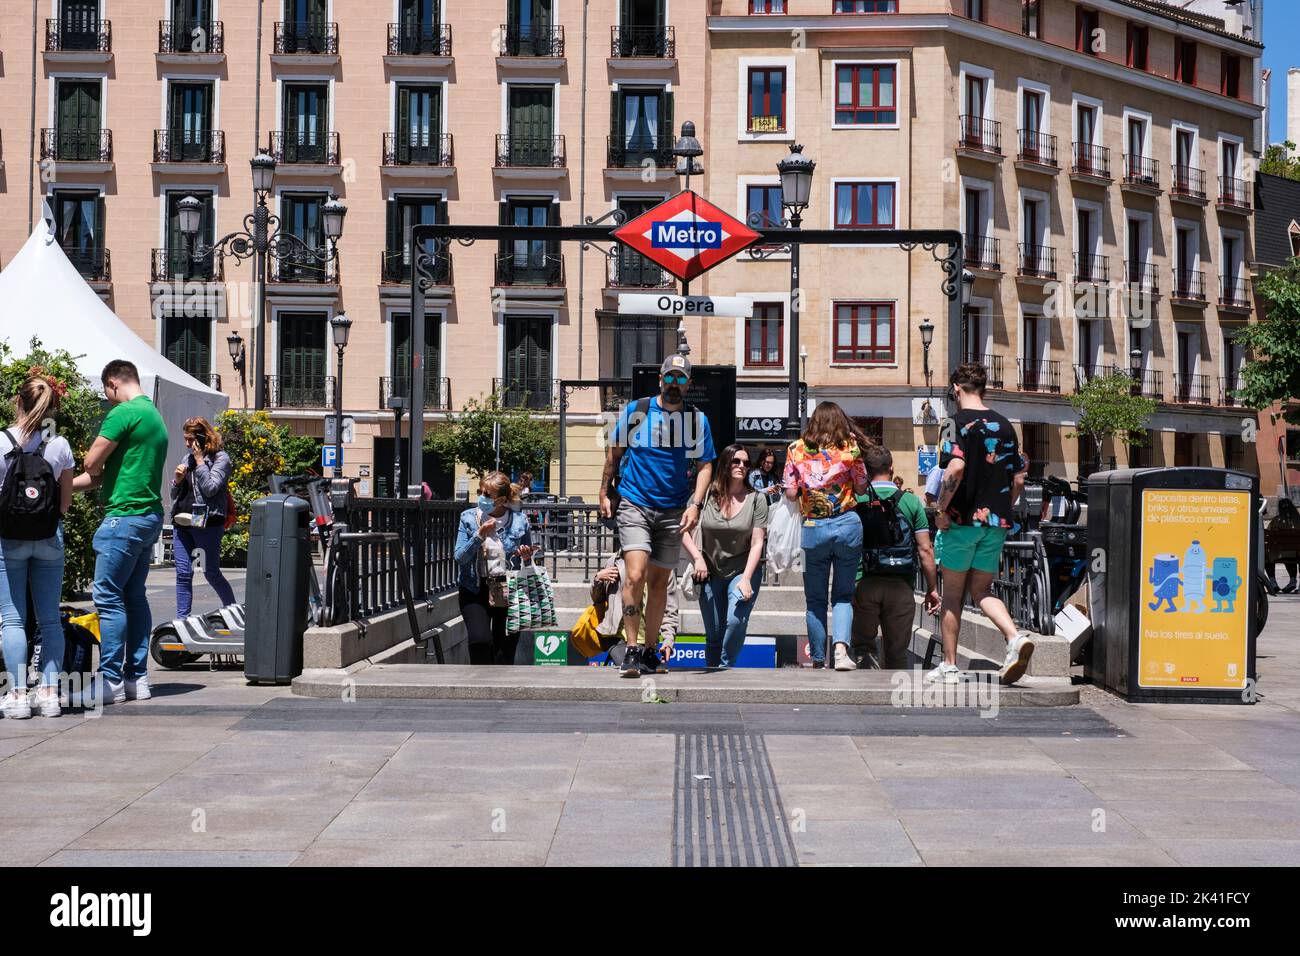 España, Madrid. Entrada/salida a la parada de metro Opera. Foto de stock